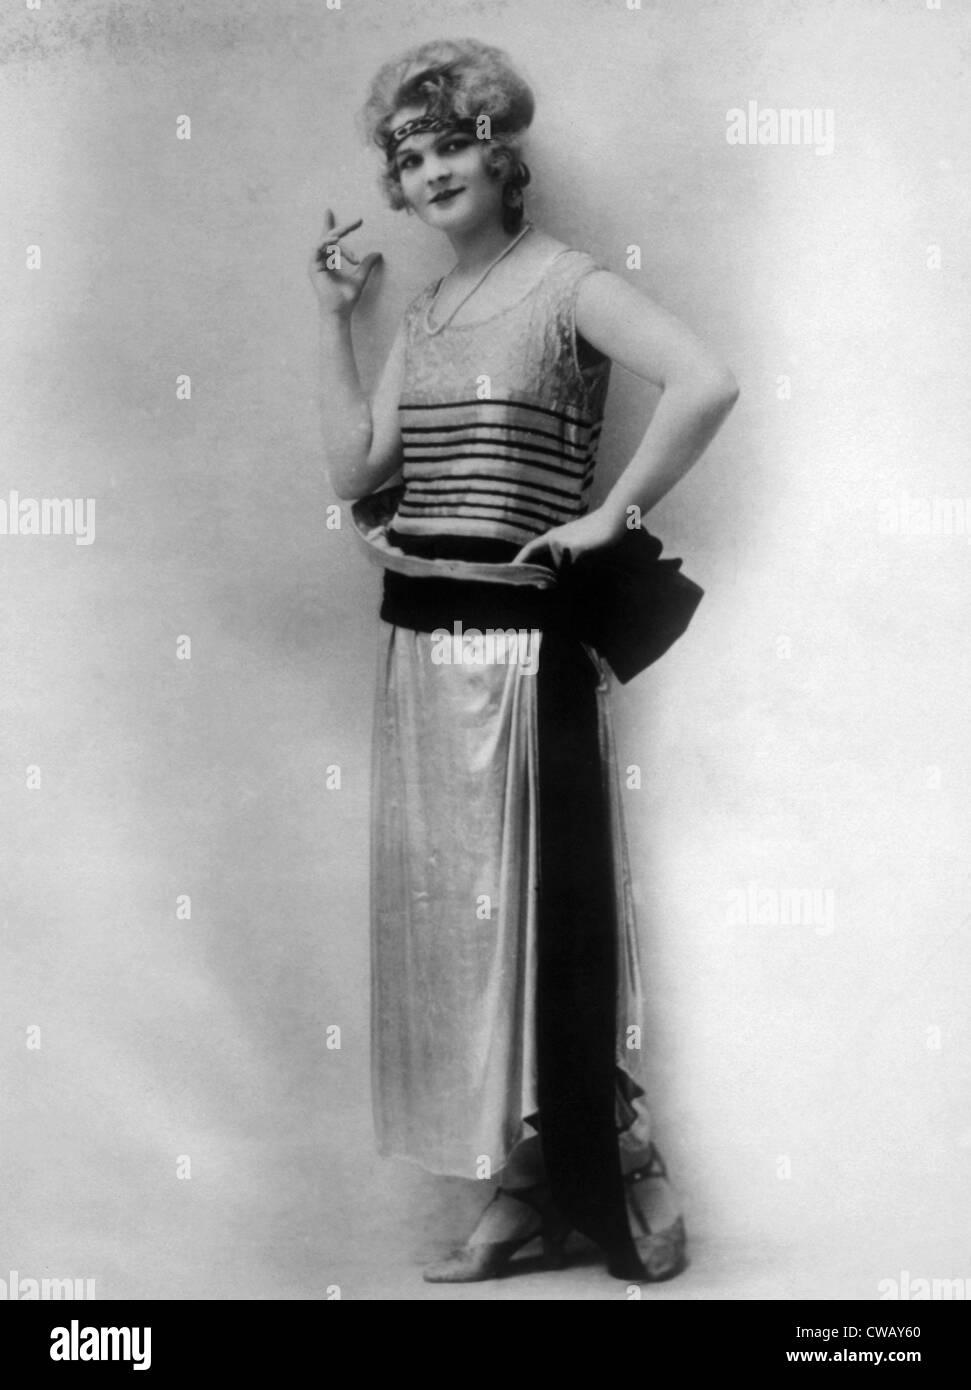 Vestido de Noche plateado de lana parisino de terciopelo negro con correa, circa 1923. Foto: Cortesía Everett Collection Foto de stock